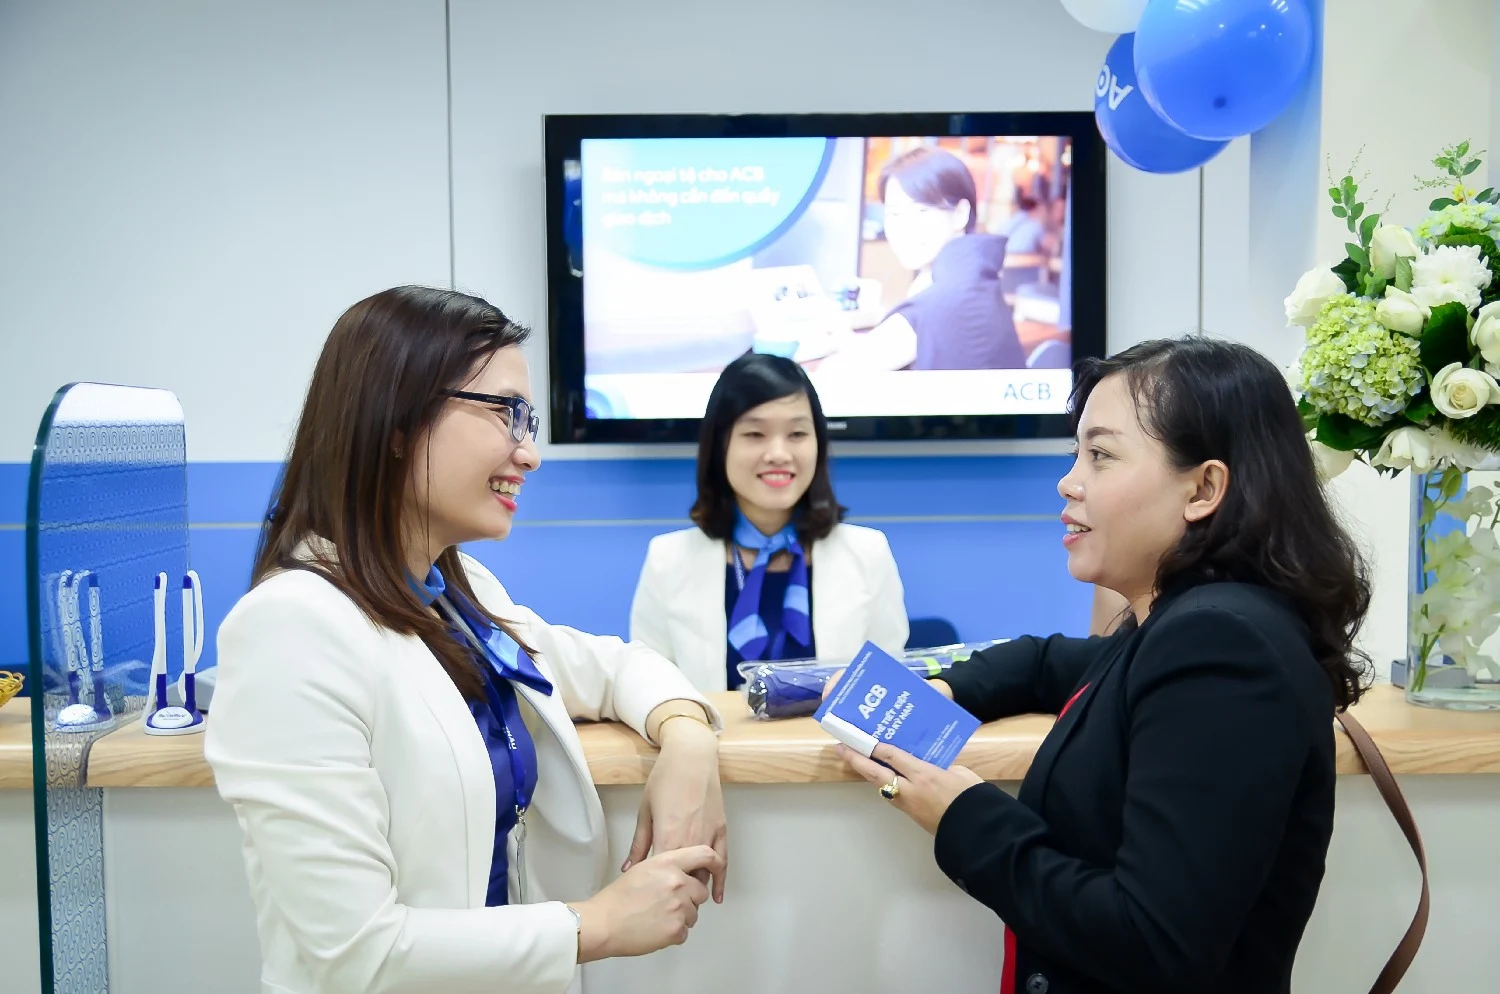 Nghiên cứu sự hài lòng của khách hàng đối với việc sử dụng ngân hàng điện tử tại Ngân hàng Thương mại Cổ phần Á Châu trên địa bàn TP.Hồ Chí Minh